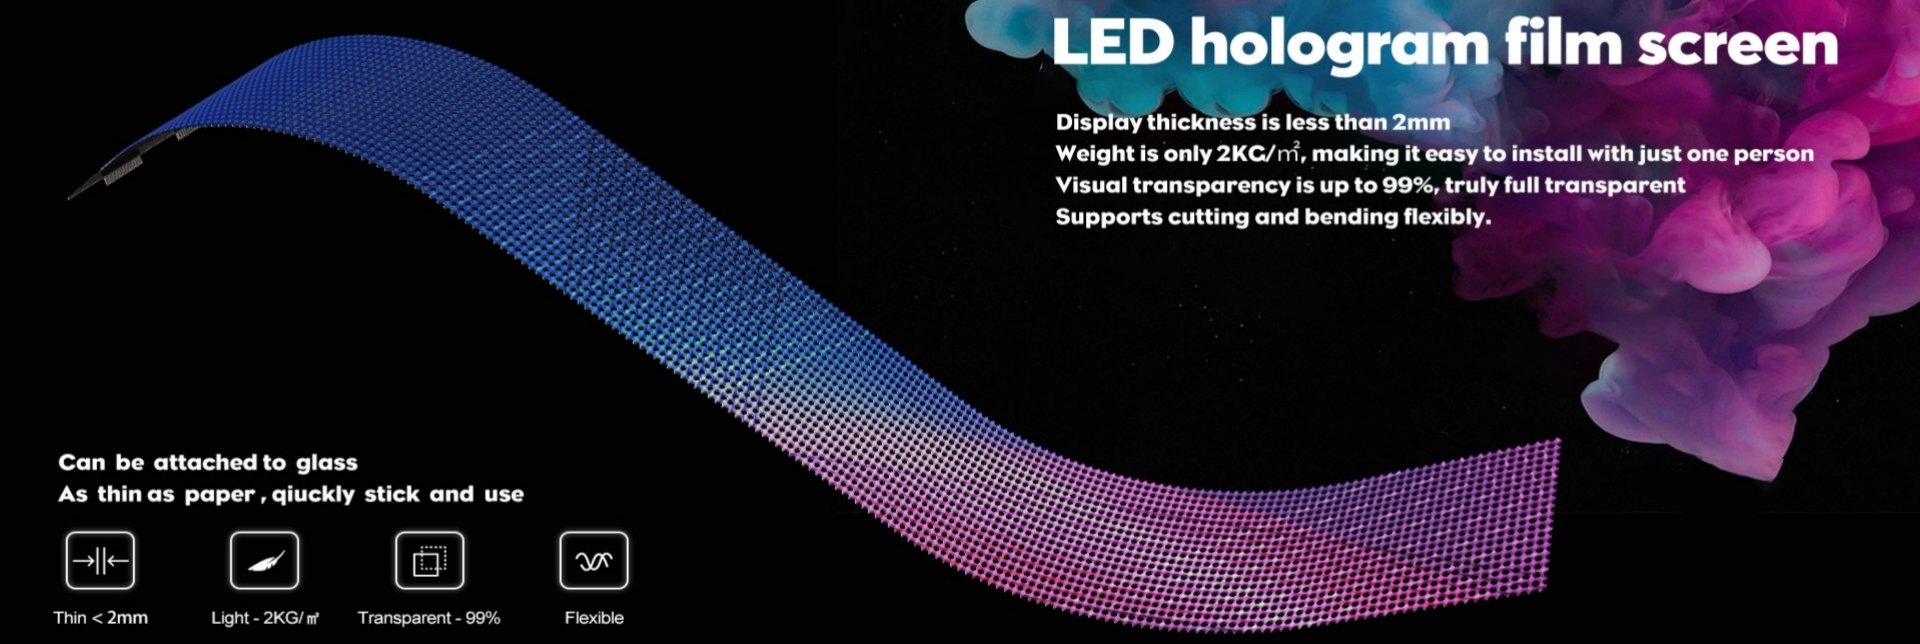 gjennomsiktig LED-videobanner